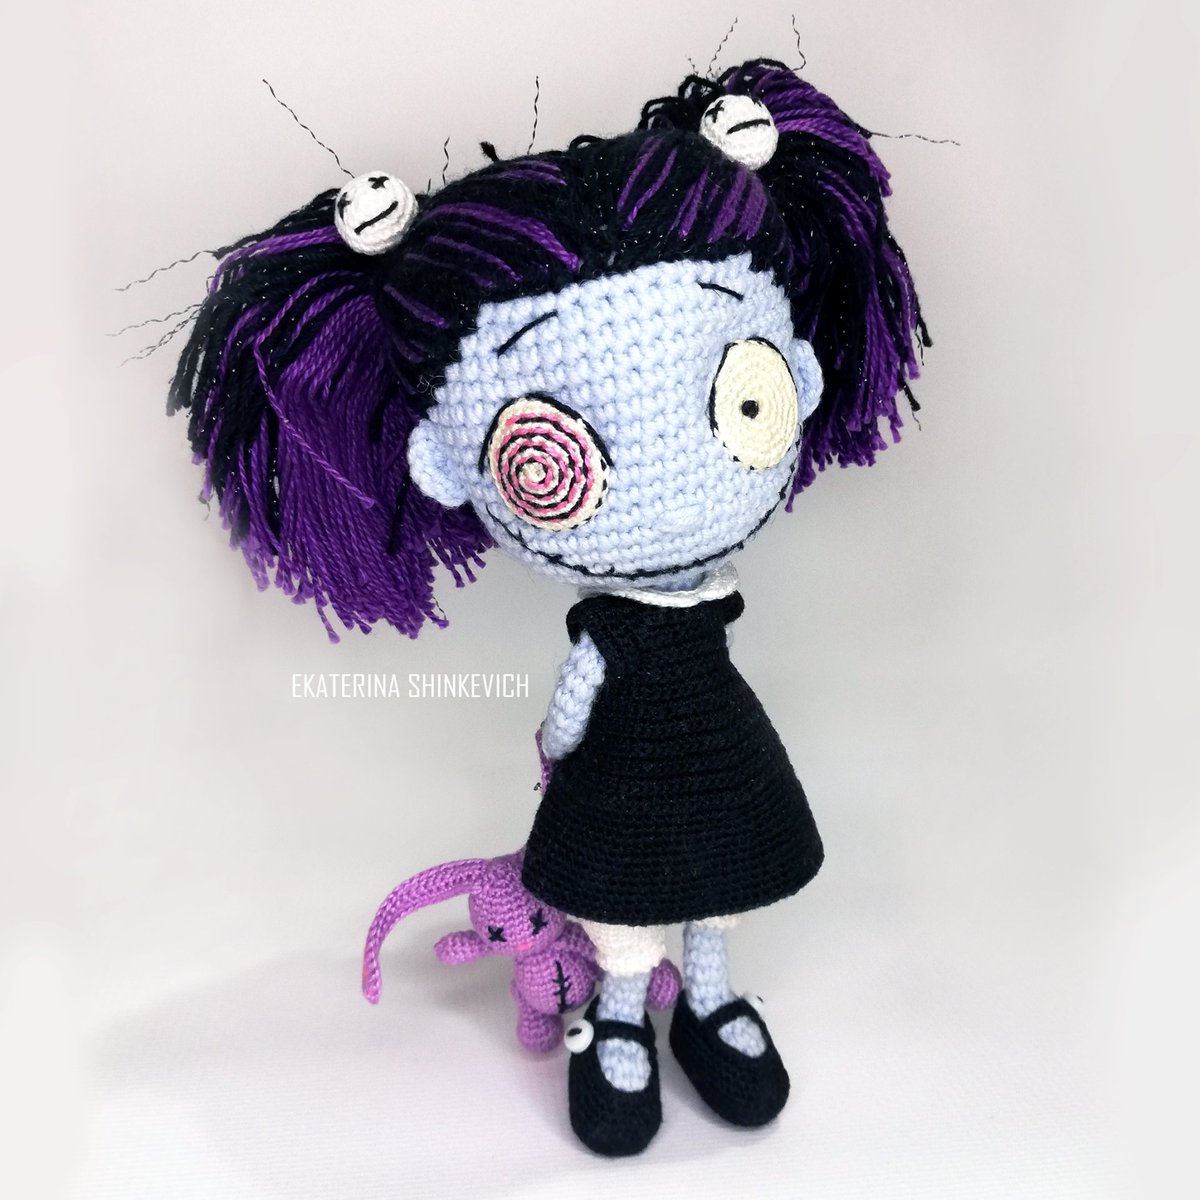 Halloween Zombie Doll
dailydoll.shop/shop/halloween…
#handmade #dailydollshop #crochettoy #crochetdoll #crochet #toys #doll #christmasdecor #diy #diyideas #halloweendecor #christmas #amigurumipattern #amigurumi #amigurumidolls #amigurumitoy #witch #thanksgivingday #plushtoys #Halloween